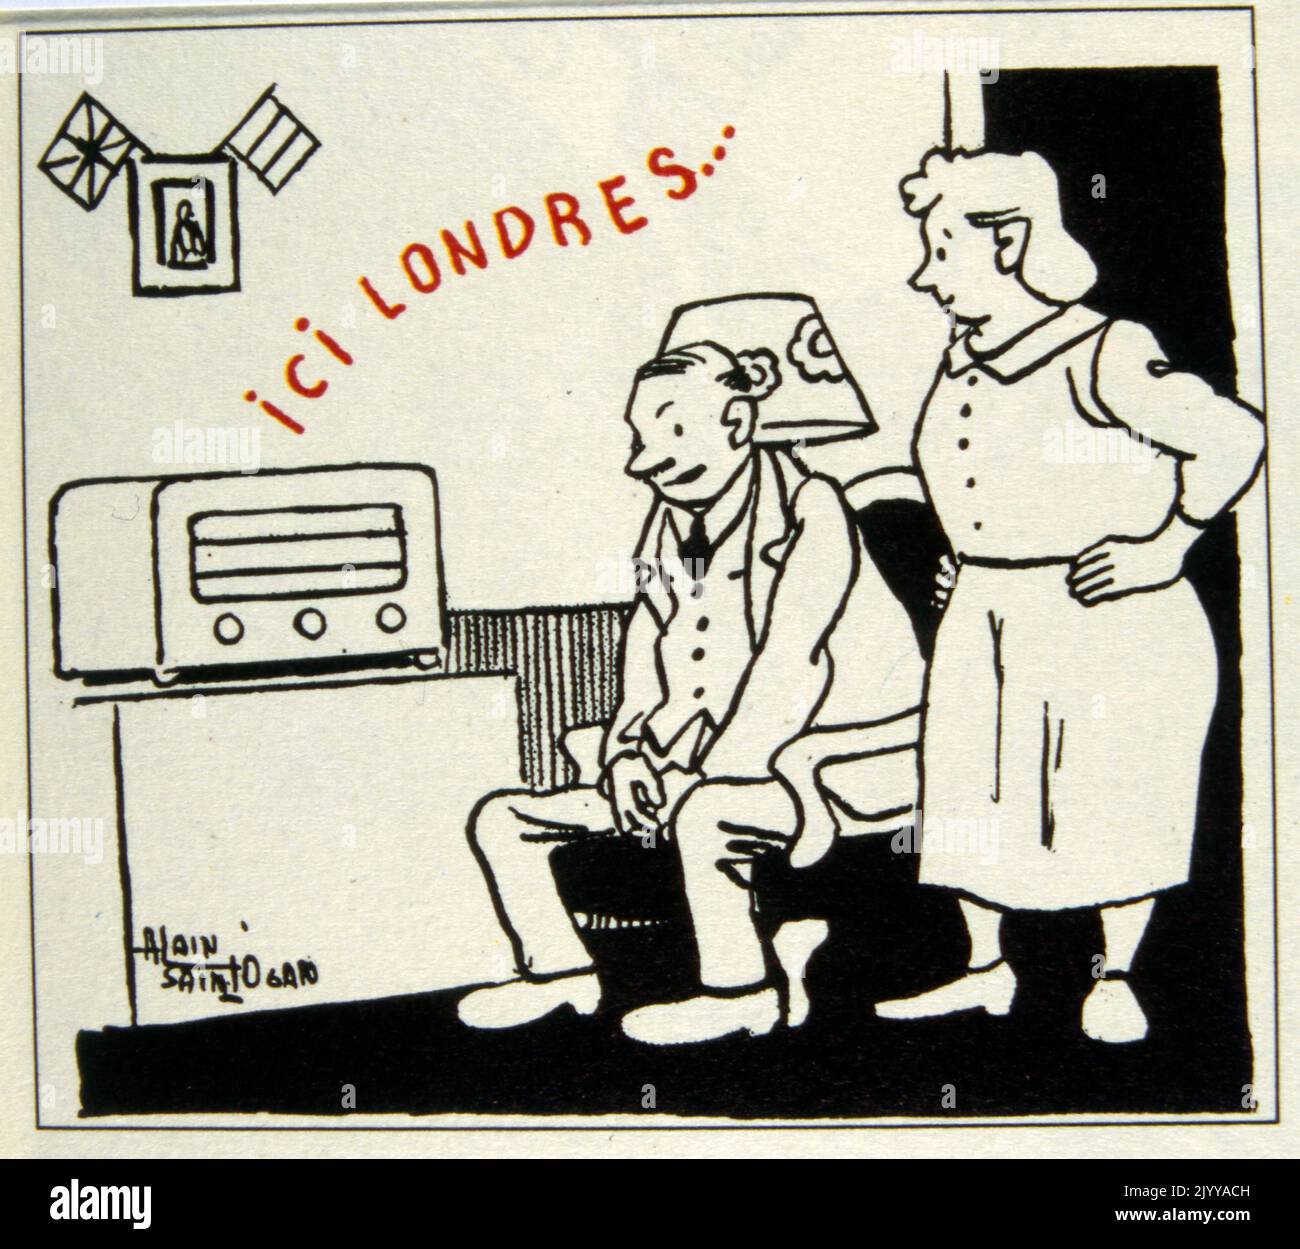 Immagine in bianco e nero di un uomo e di una donna che ascoltano la radio da cui provengono le parole 'London Speaking'. Foto Stock